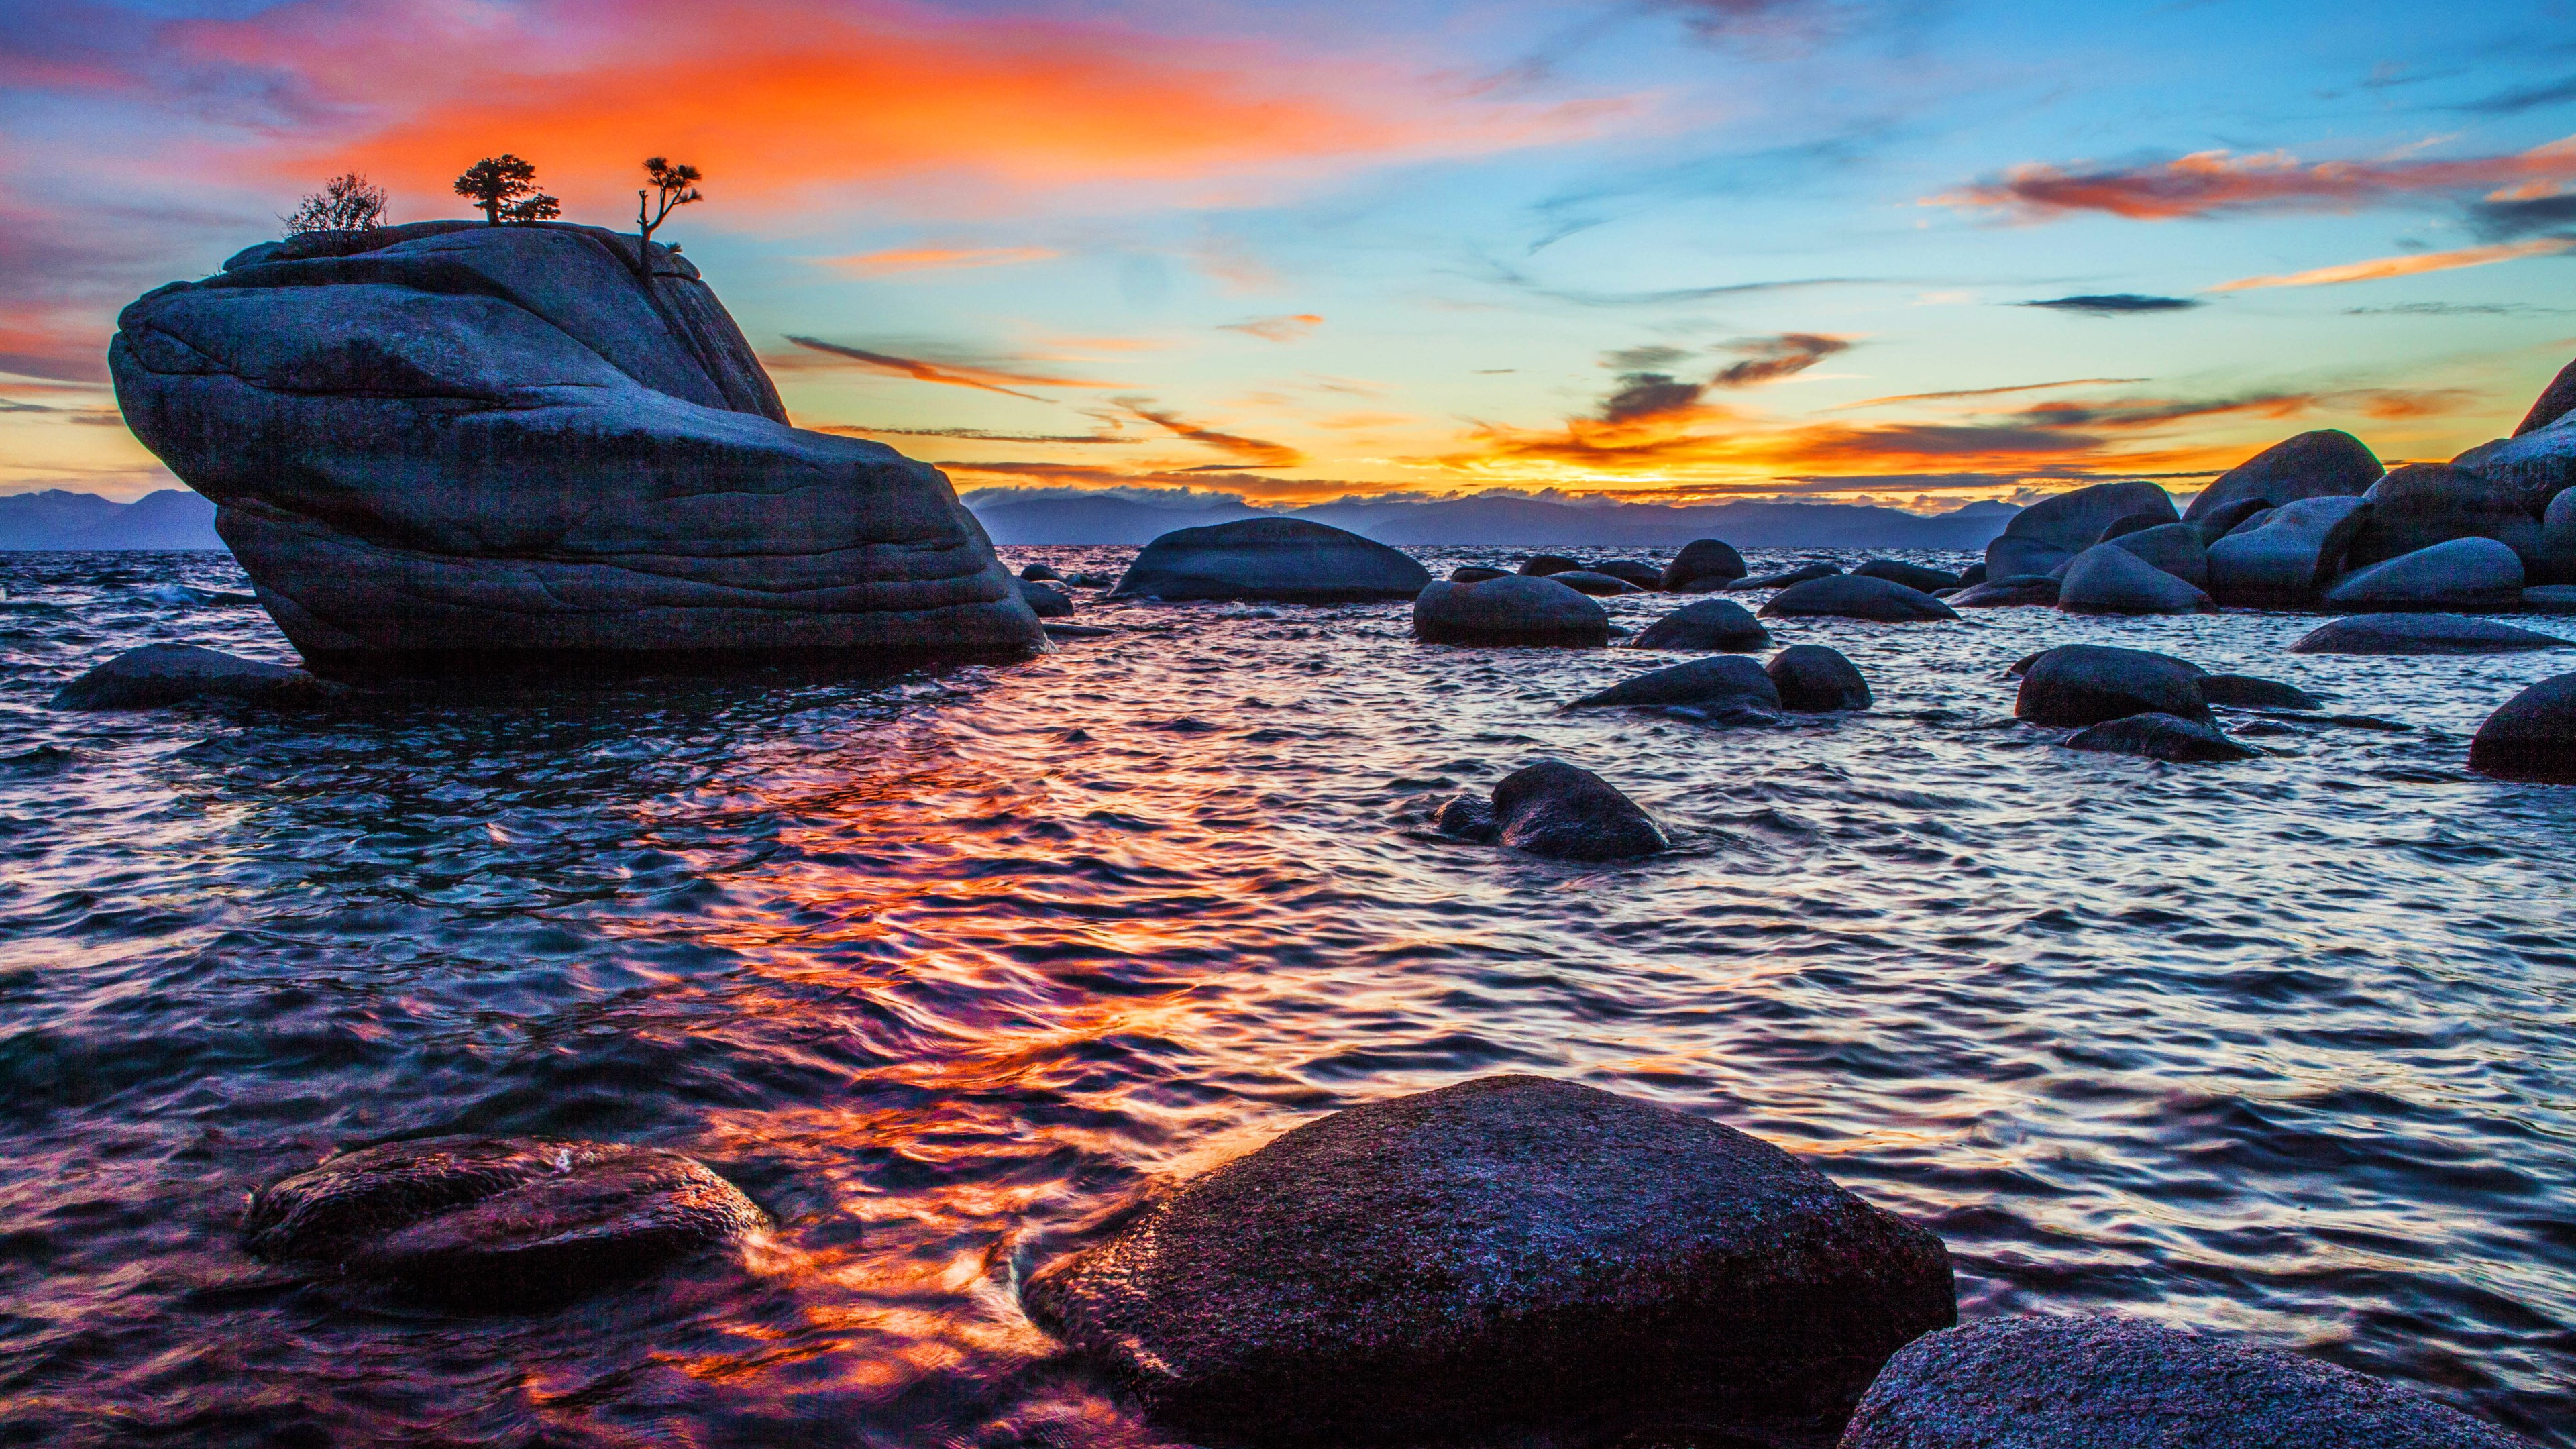 Bonsai Rock sunset at Lake Tahoe wallpaper 3840x2160